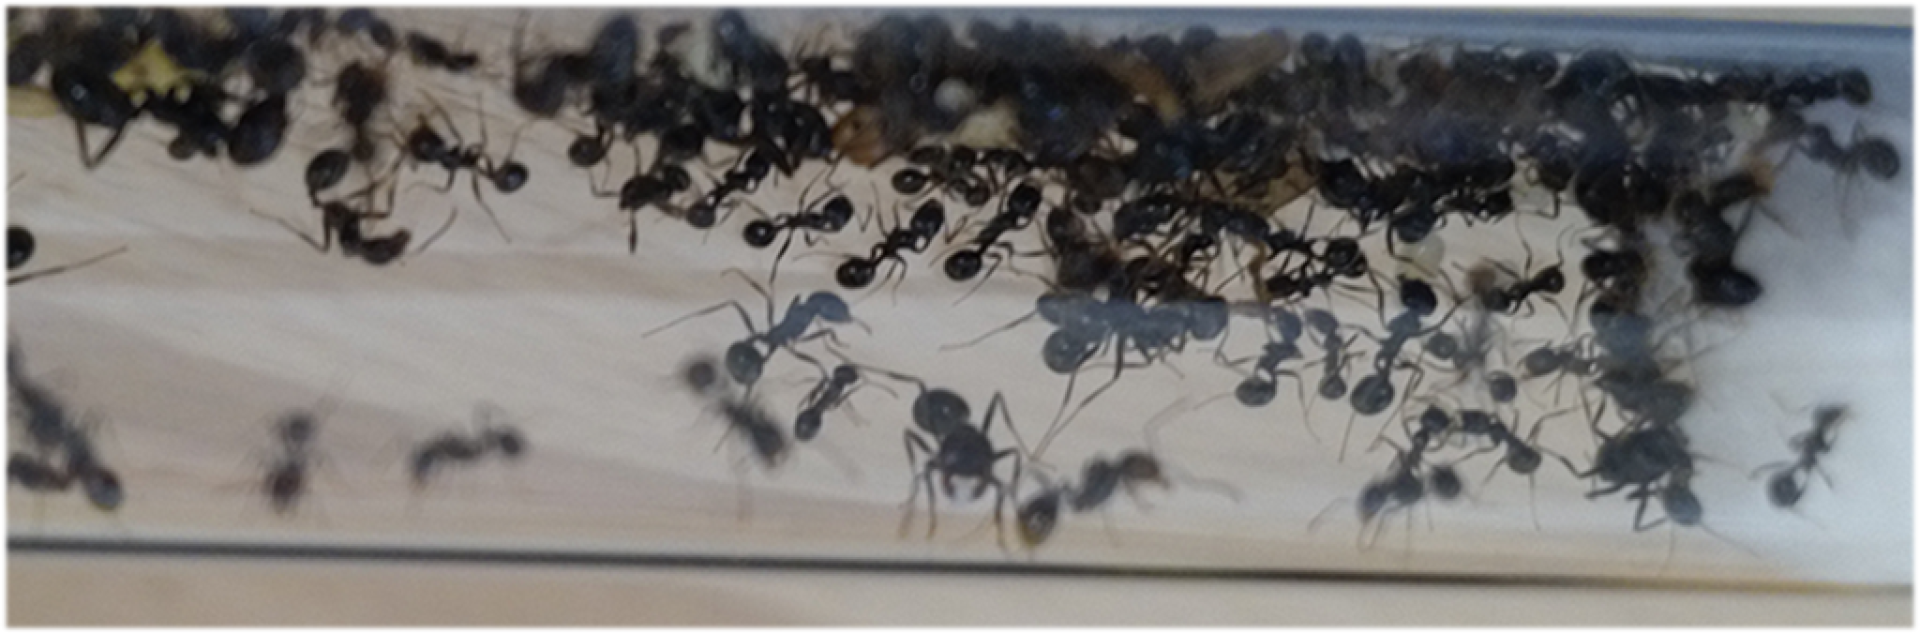 Mietkolonien für Lehrpersonen - Ameisenkolonien zum mieten / leihen II